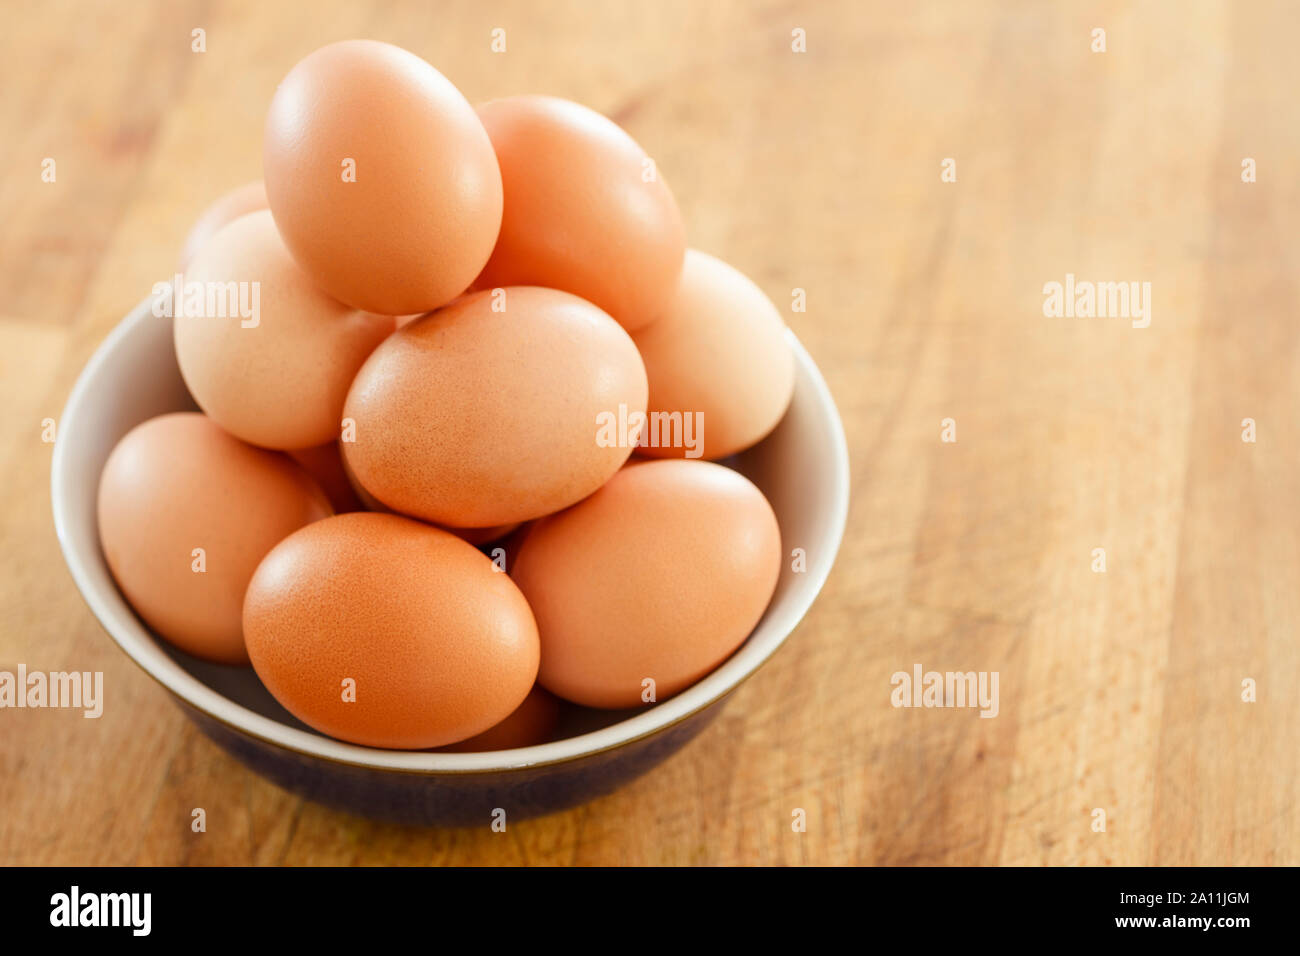 Ciotola di uova di galline su una superficie in legno Foto Stock